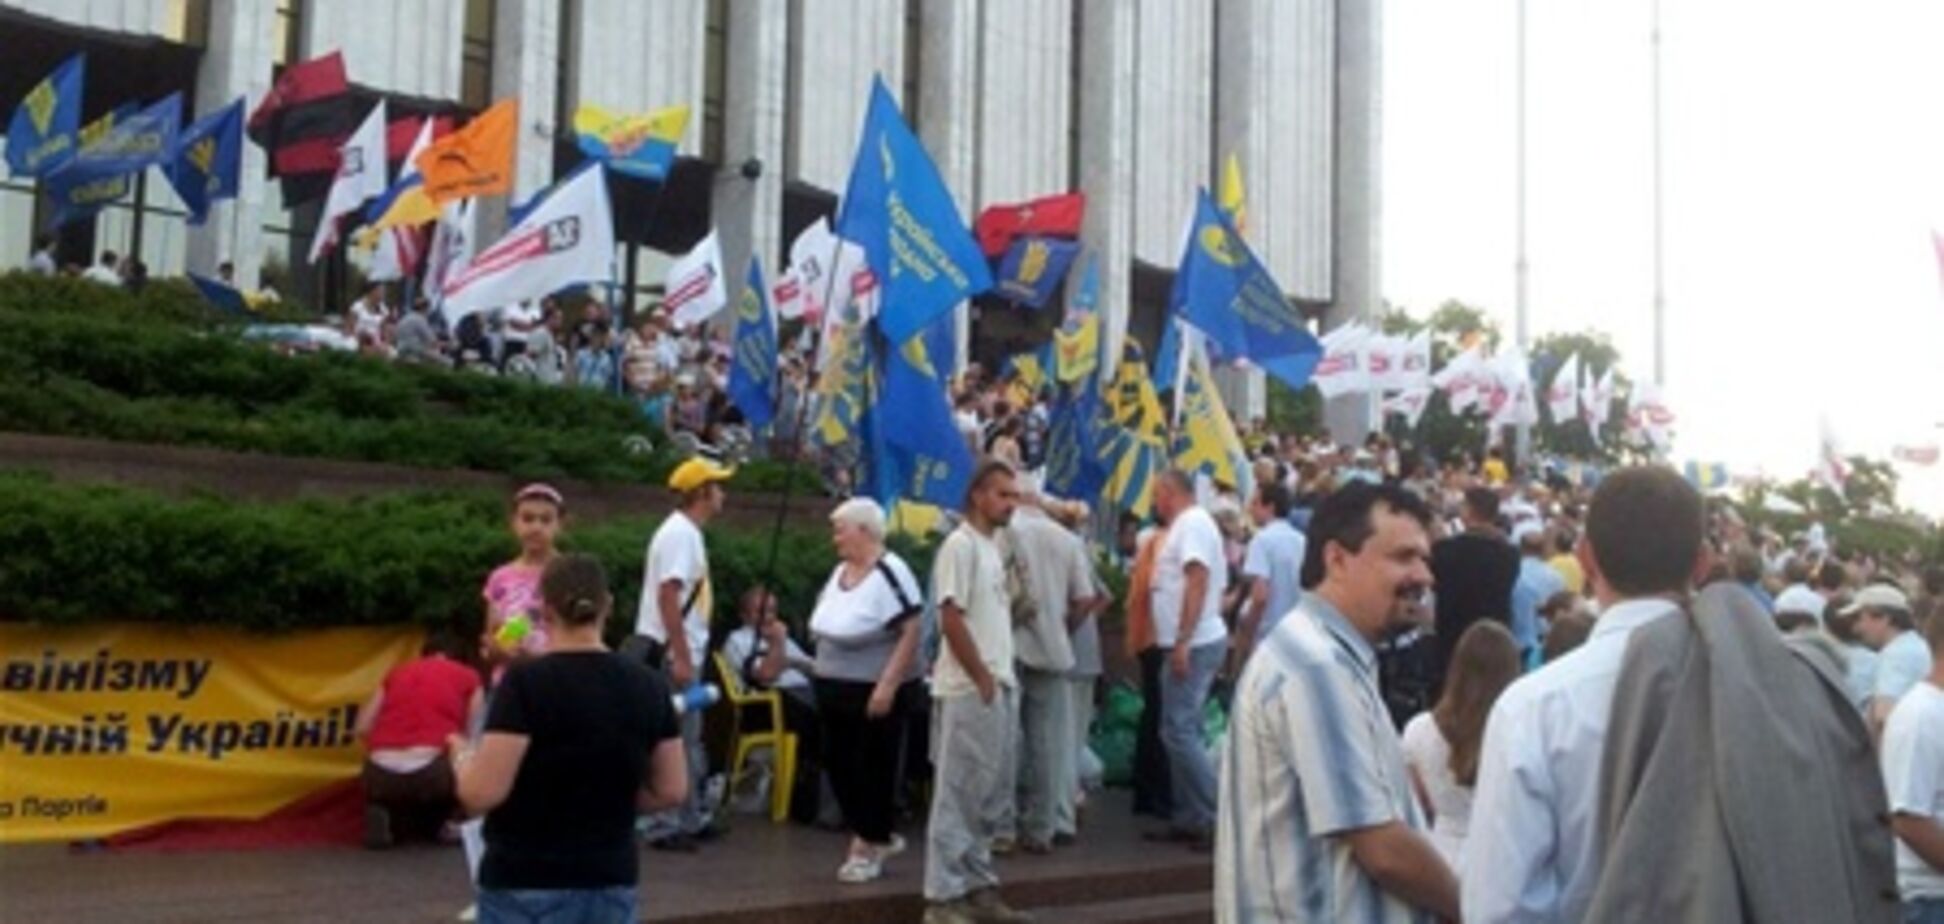 На организаторов митинга возле Укрдома составили админпротоколы